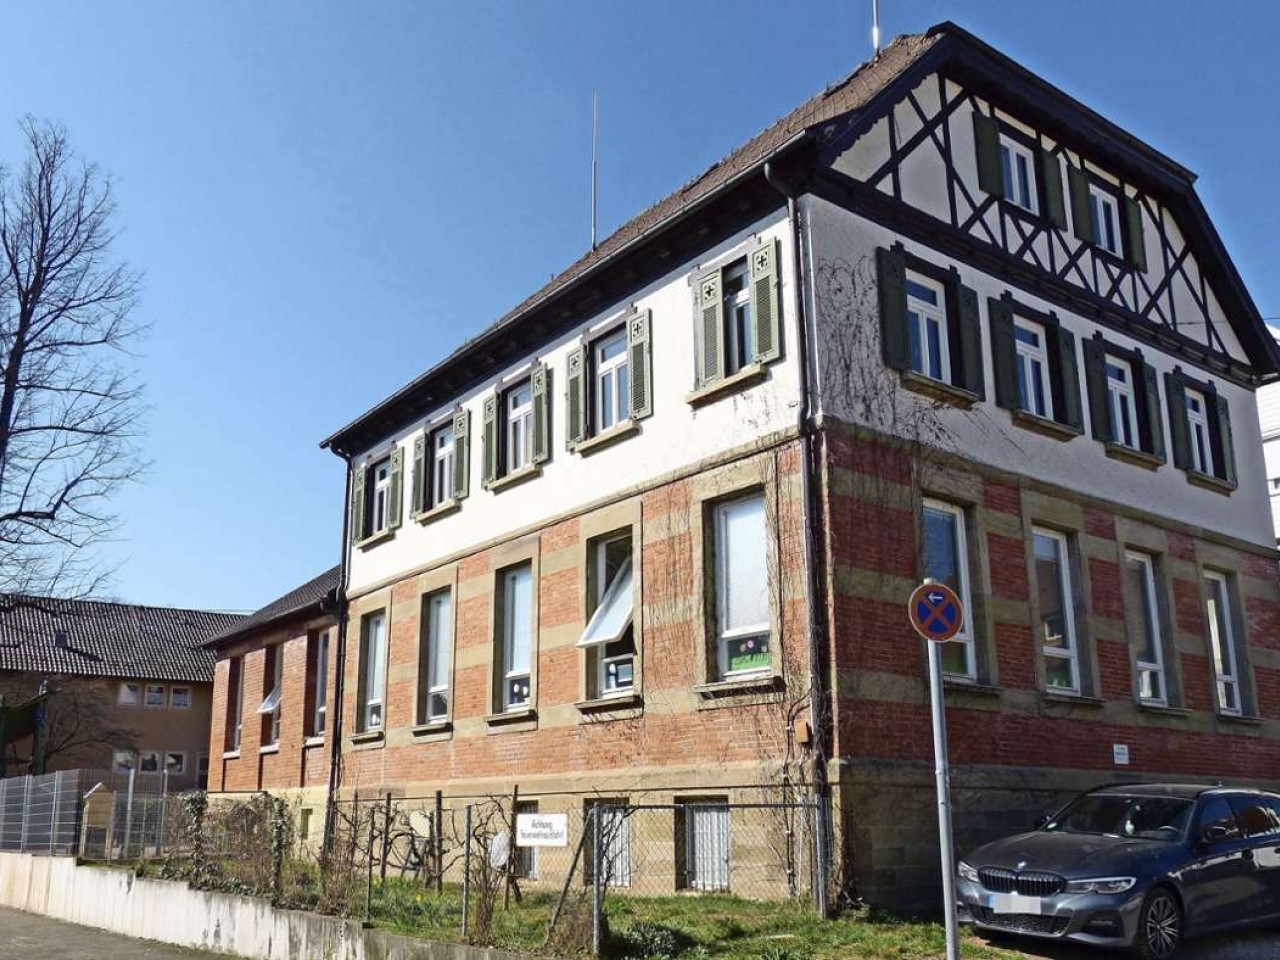 Kinderbetreuung in Uhlbach: Interimskita soll Dauereinrichtung werden